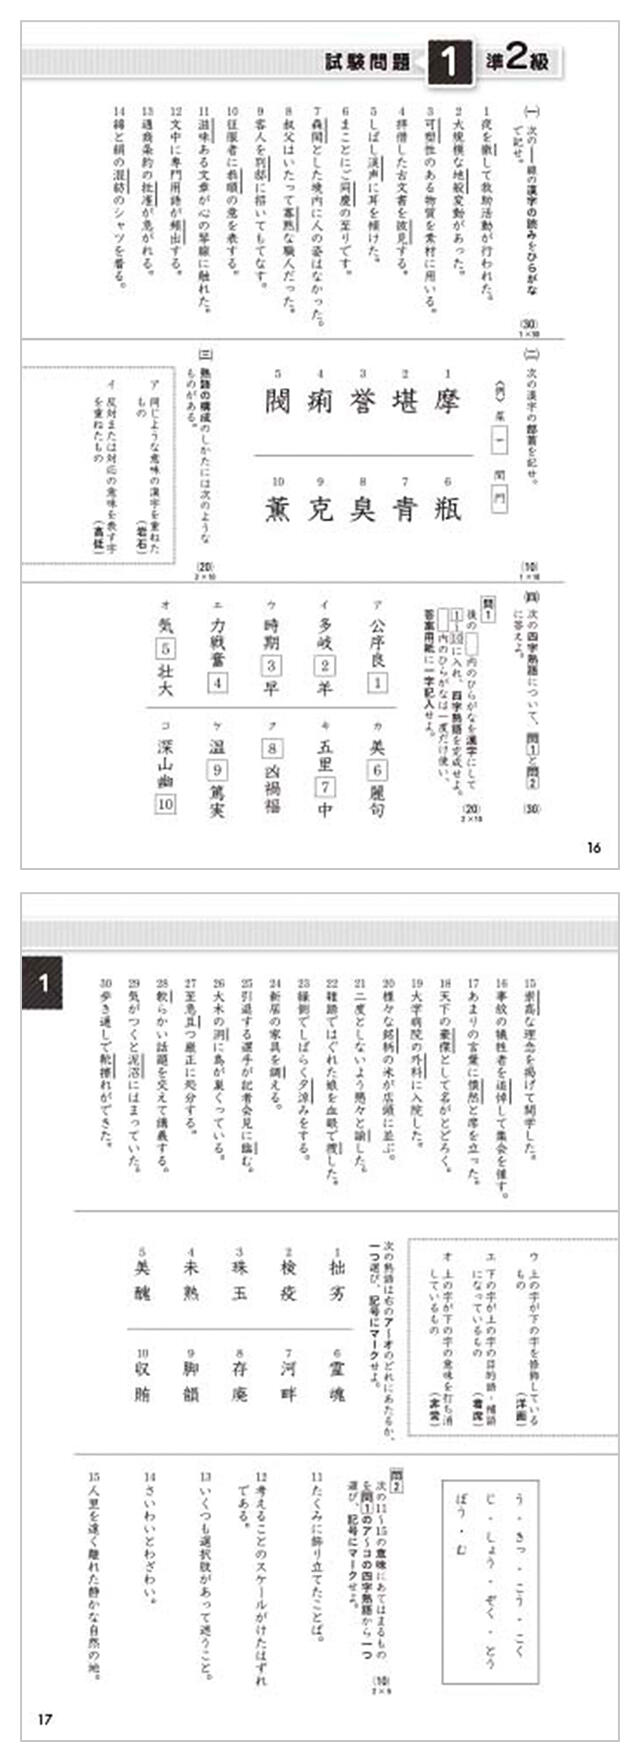 漢検 5級 過去問題集 2020年度版 - 語学・辞書・学習参考書